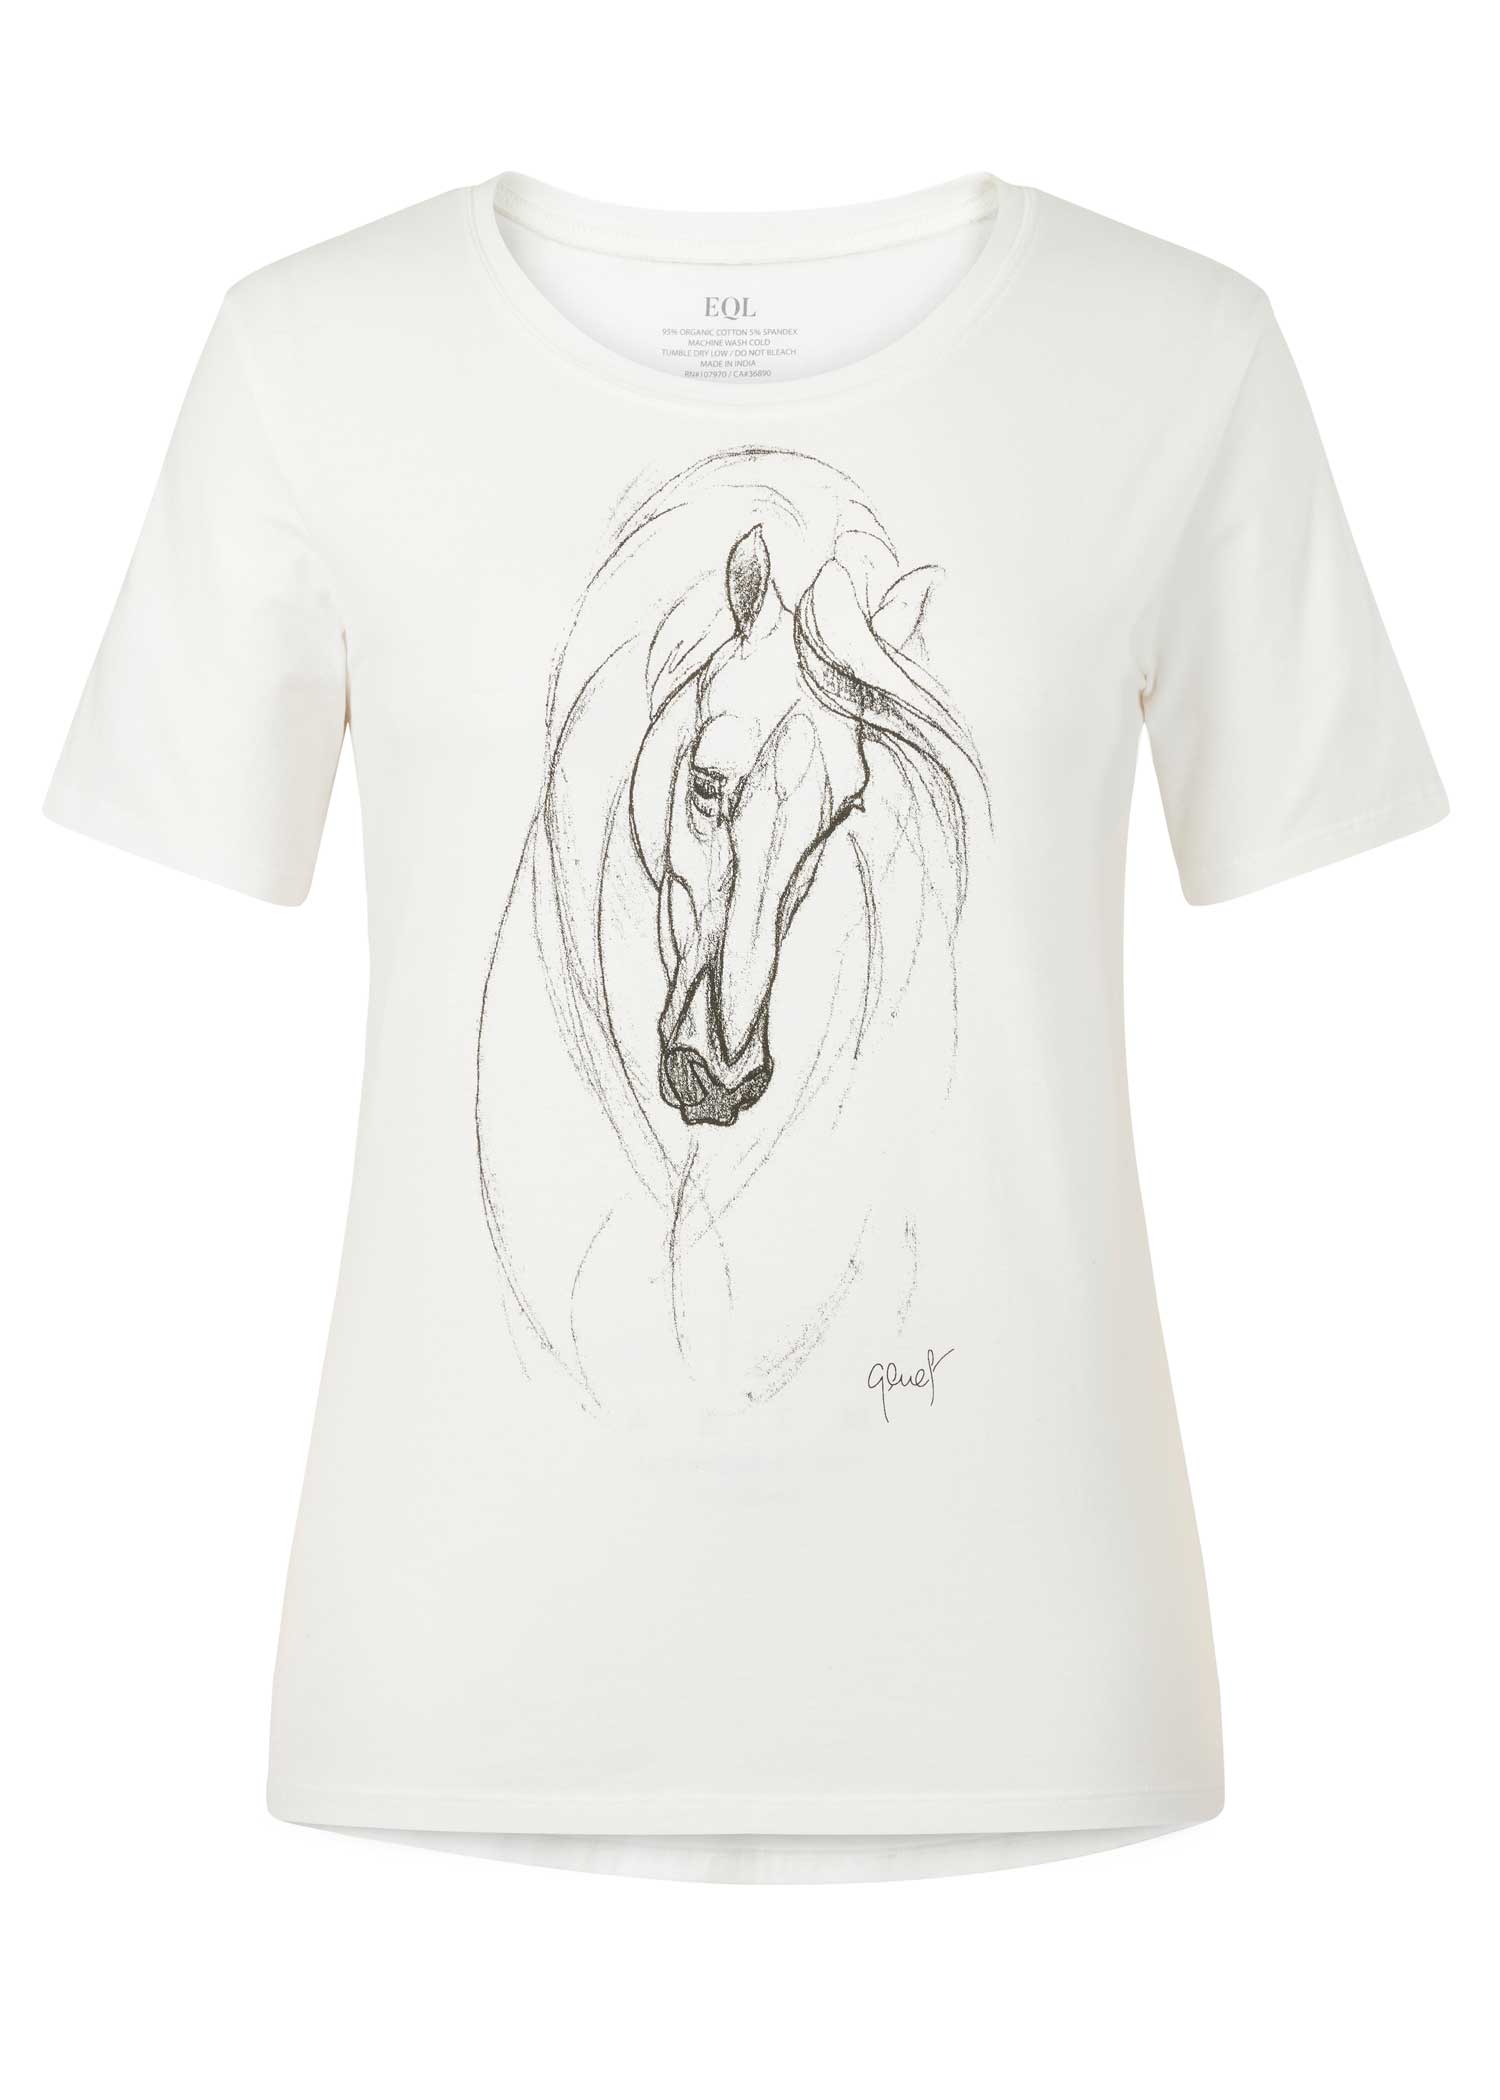 Graceful Horse T-Shirt